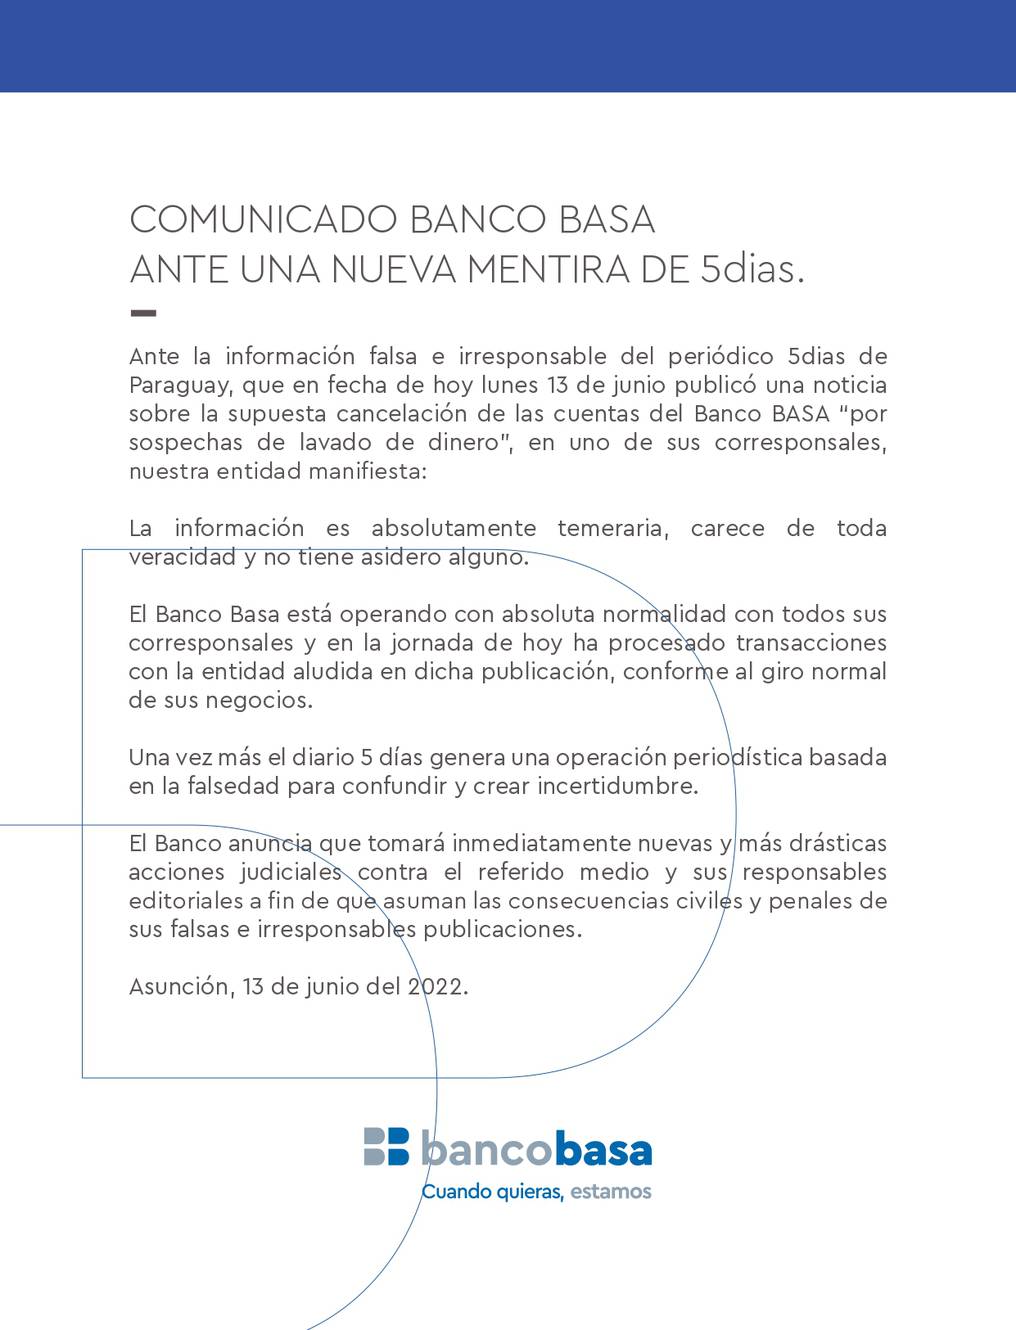 Banco Basa aclaró que la información publicada carece de toda veracidad. Foto: Gentileza.
